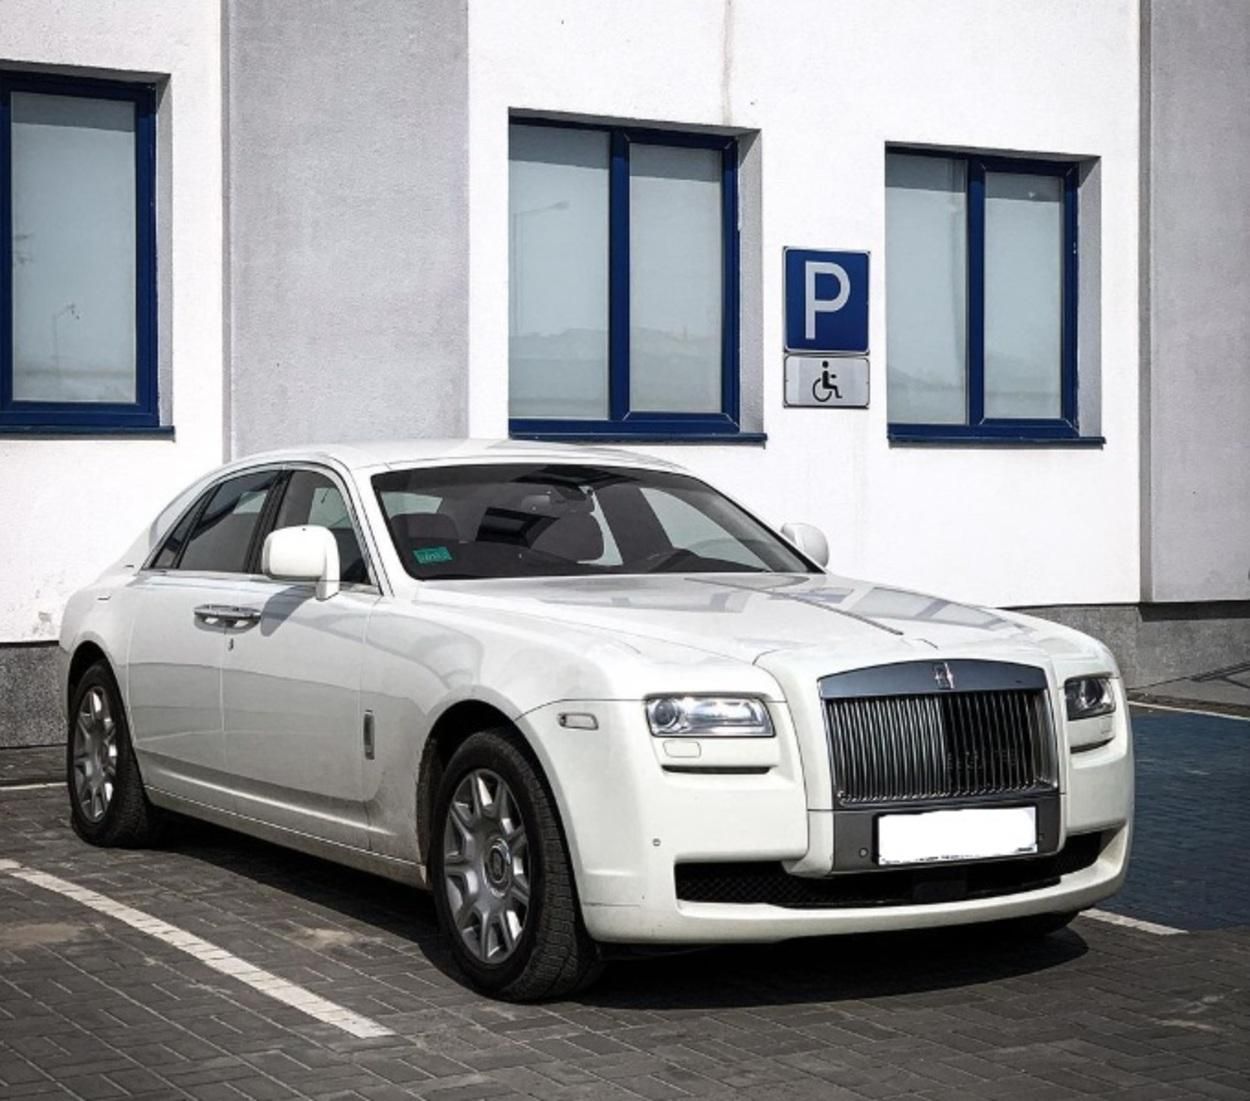 Единственный в Украине: во Львове заметили Rolls-Royce Ghost стоимостью 10 миллионов - фото 